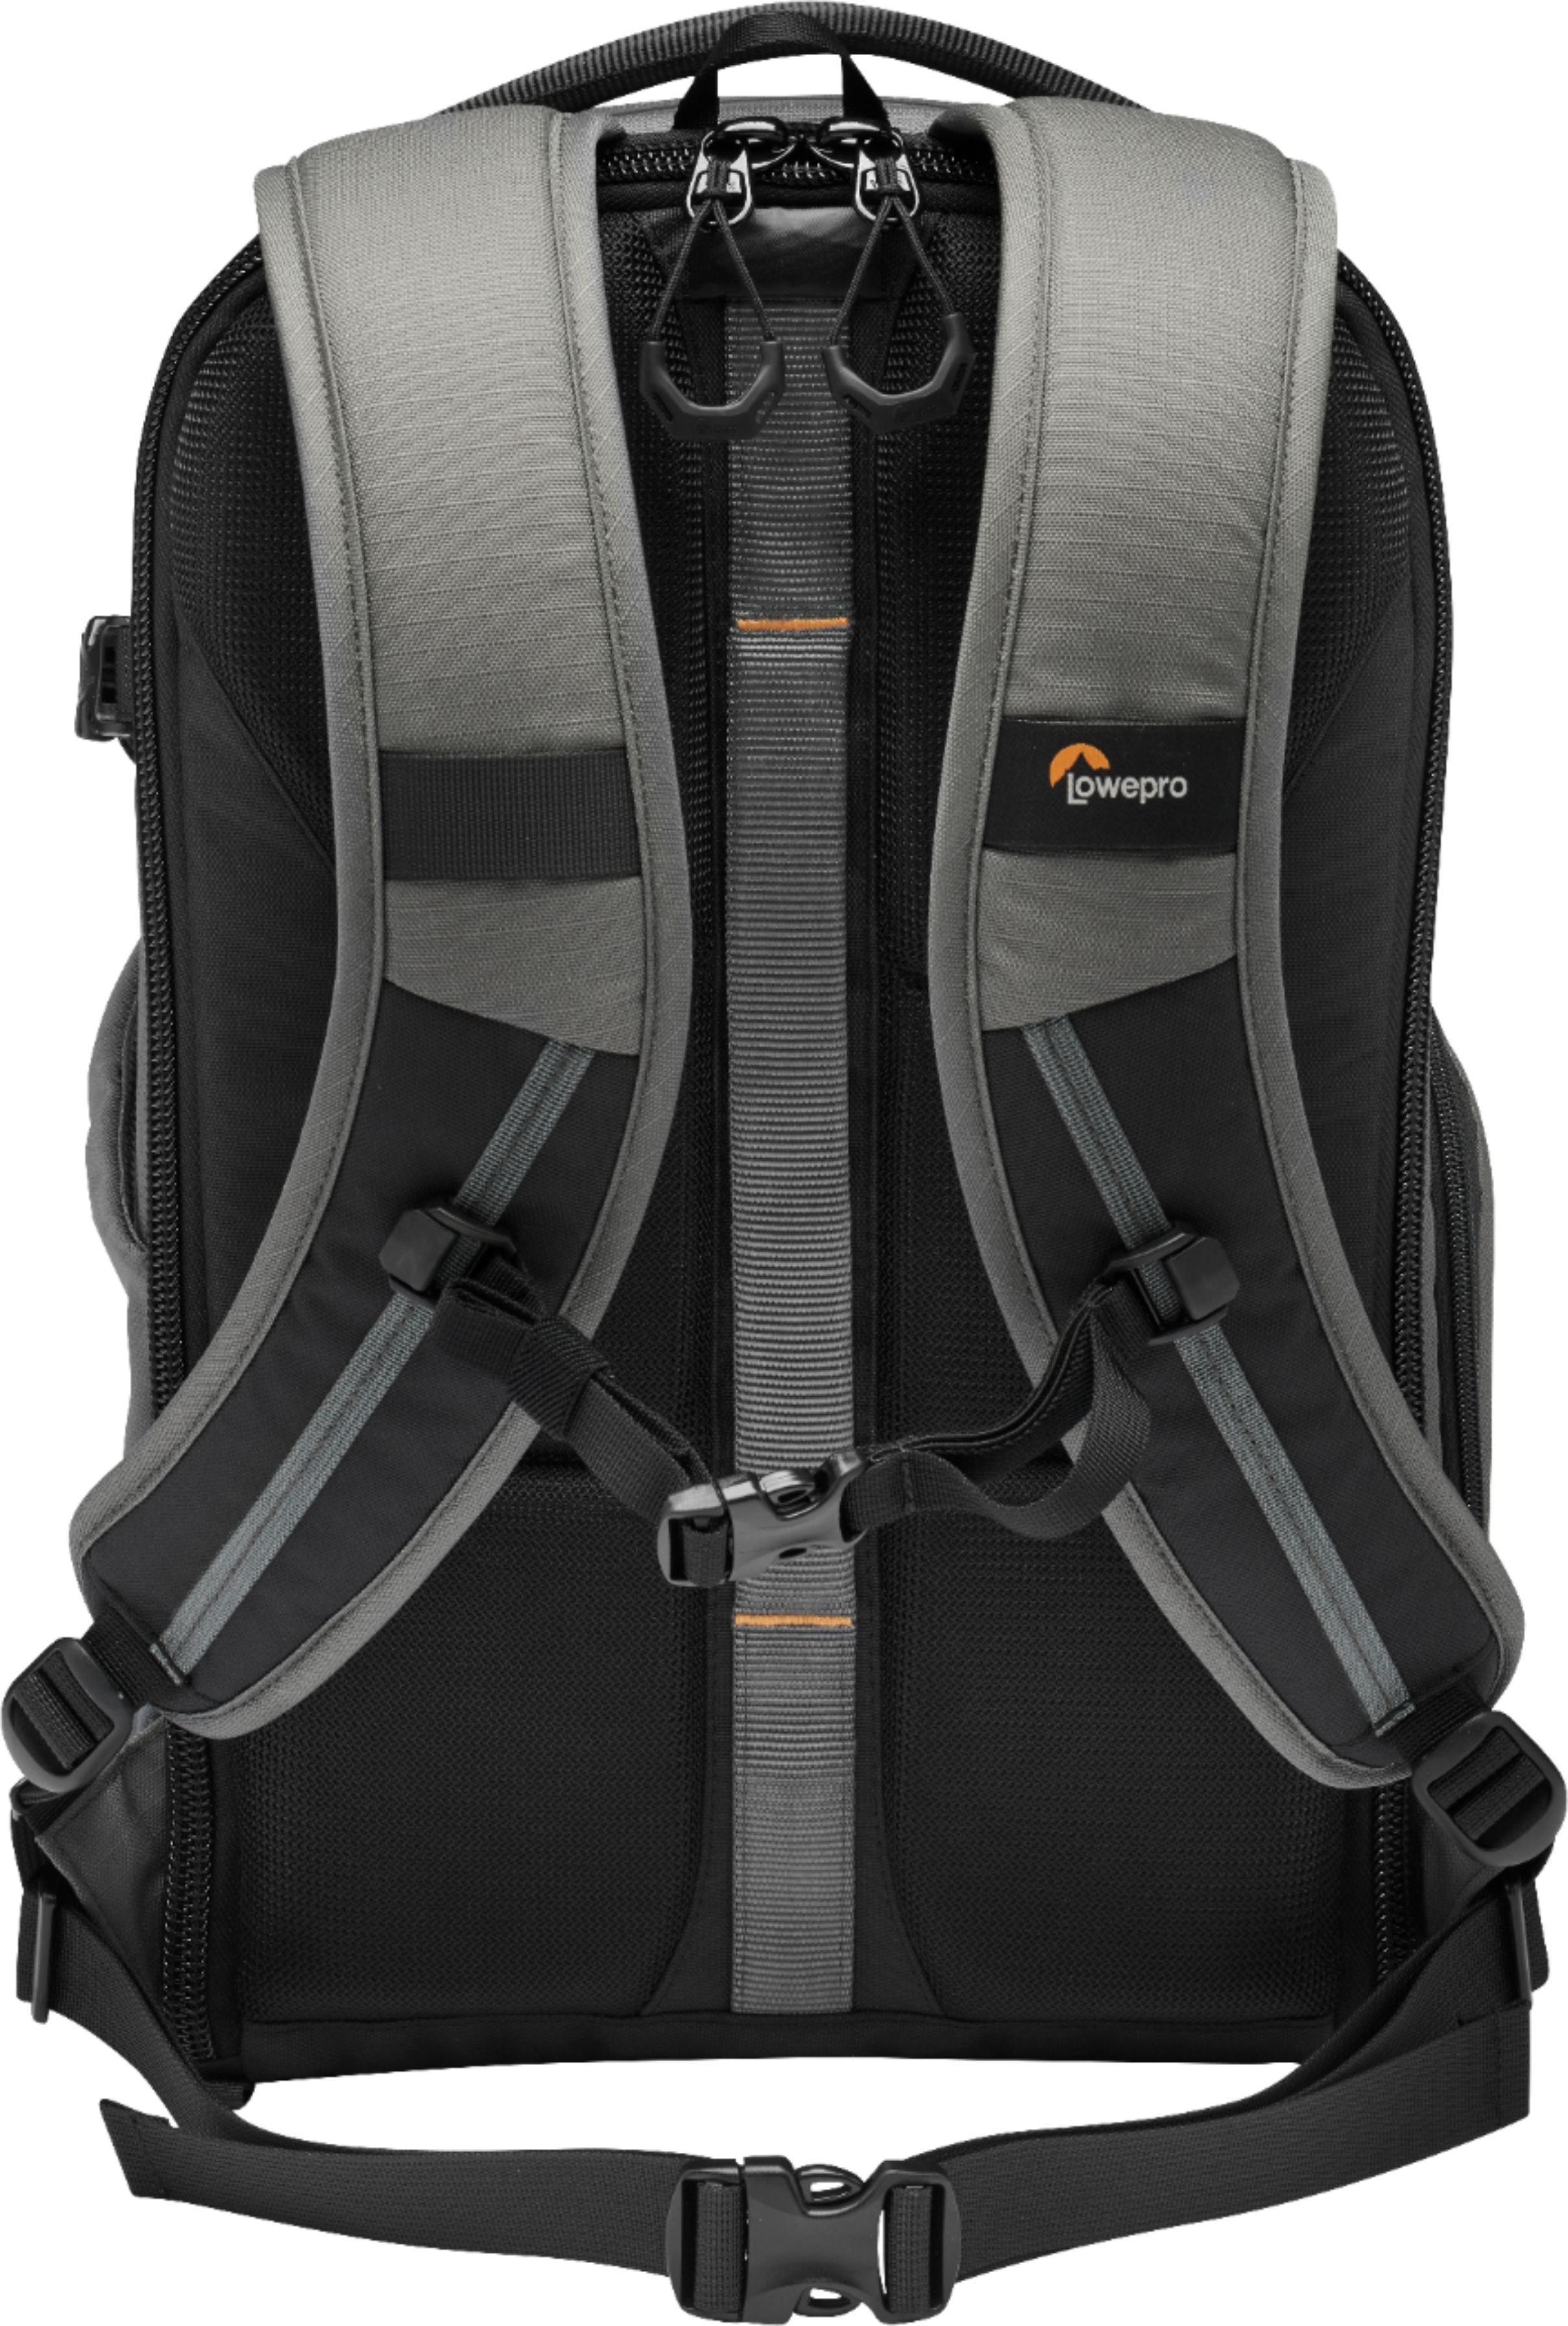 Left View: High Sierra - XBT TSA Laptop Backpack for 17" Laptop - Black